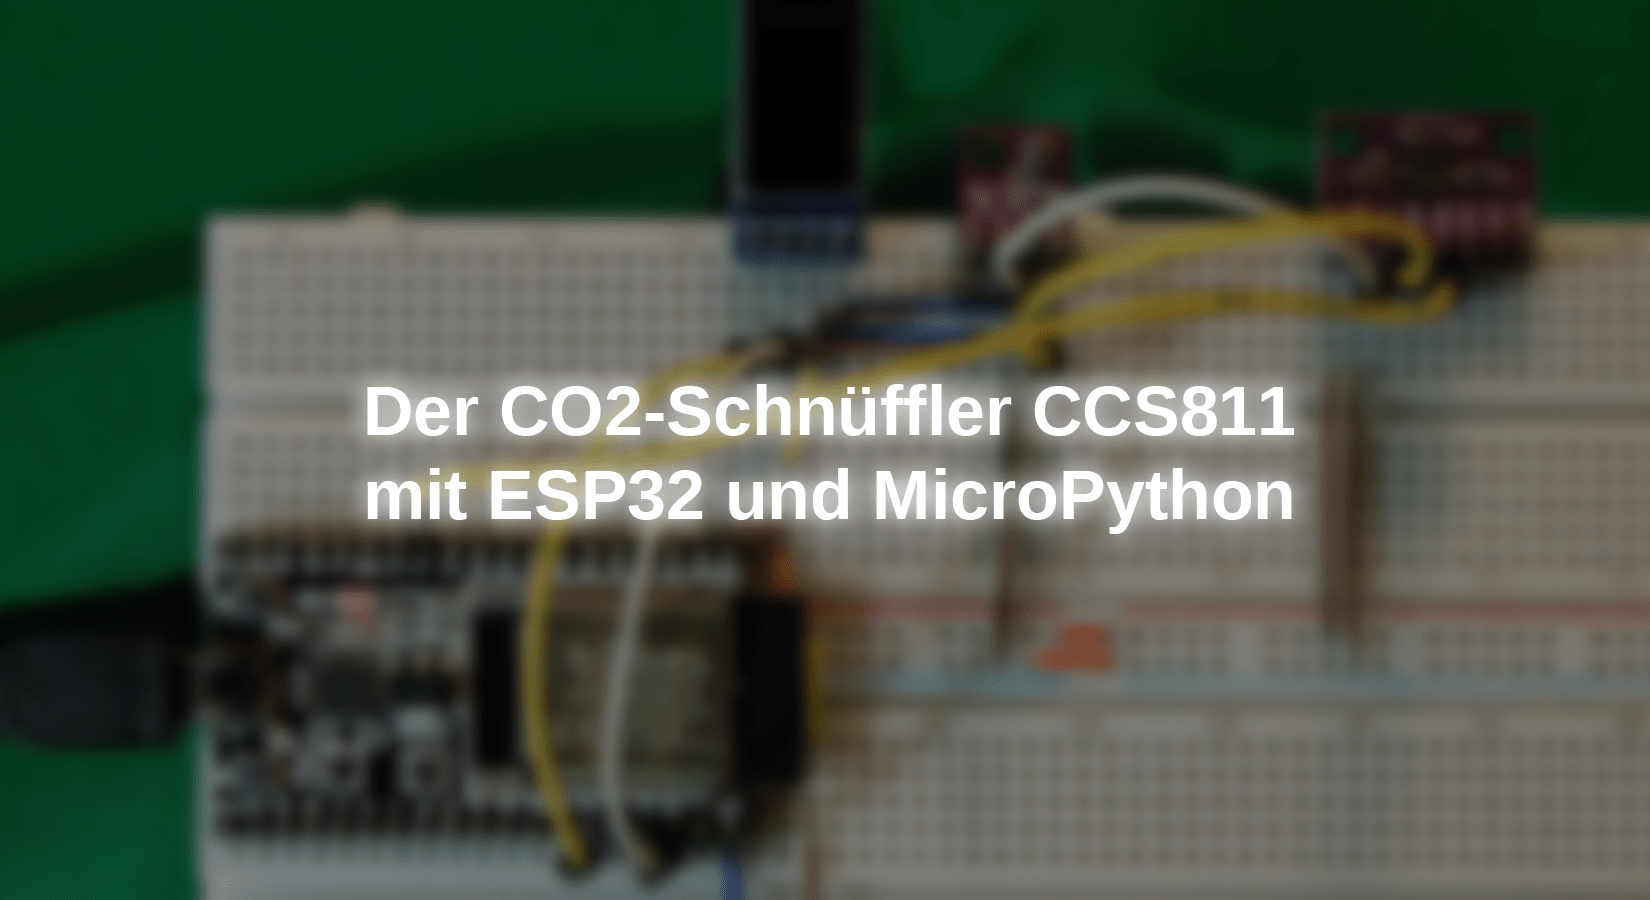 Der CO2-Schnüffler CCS811 mit ESP32 und MicroPython - AZ-Delivery